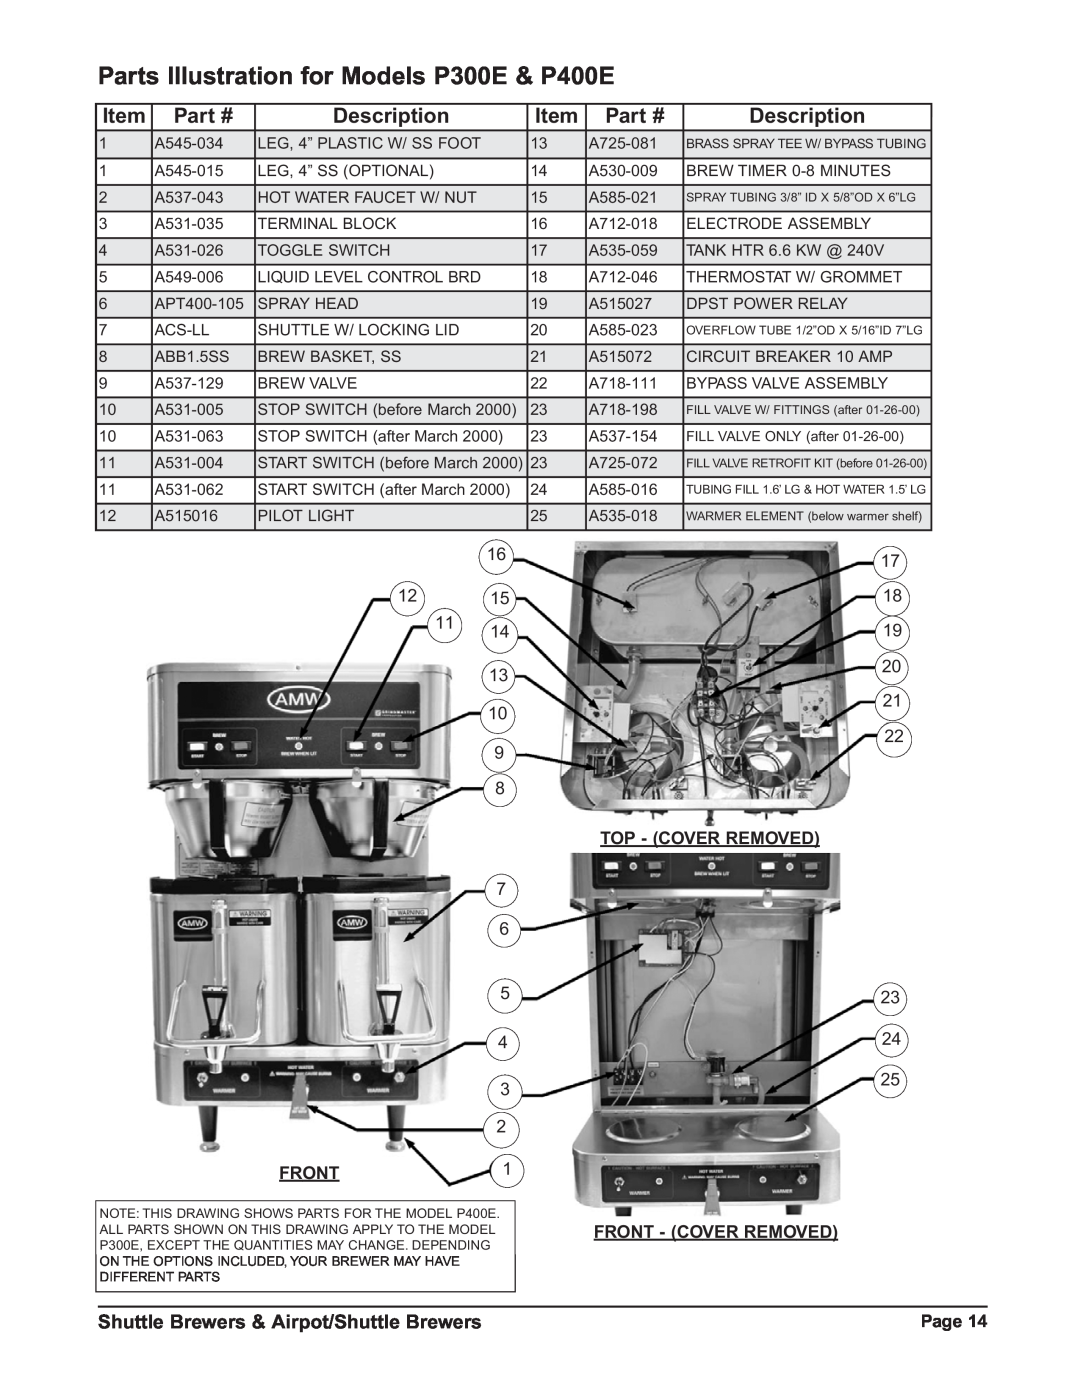 Grindmaster RAP300E Parts Illustration for Models P300E & P400E, Description, Shuttle Brewers & Airpot/Shuttle Brewers 